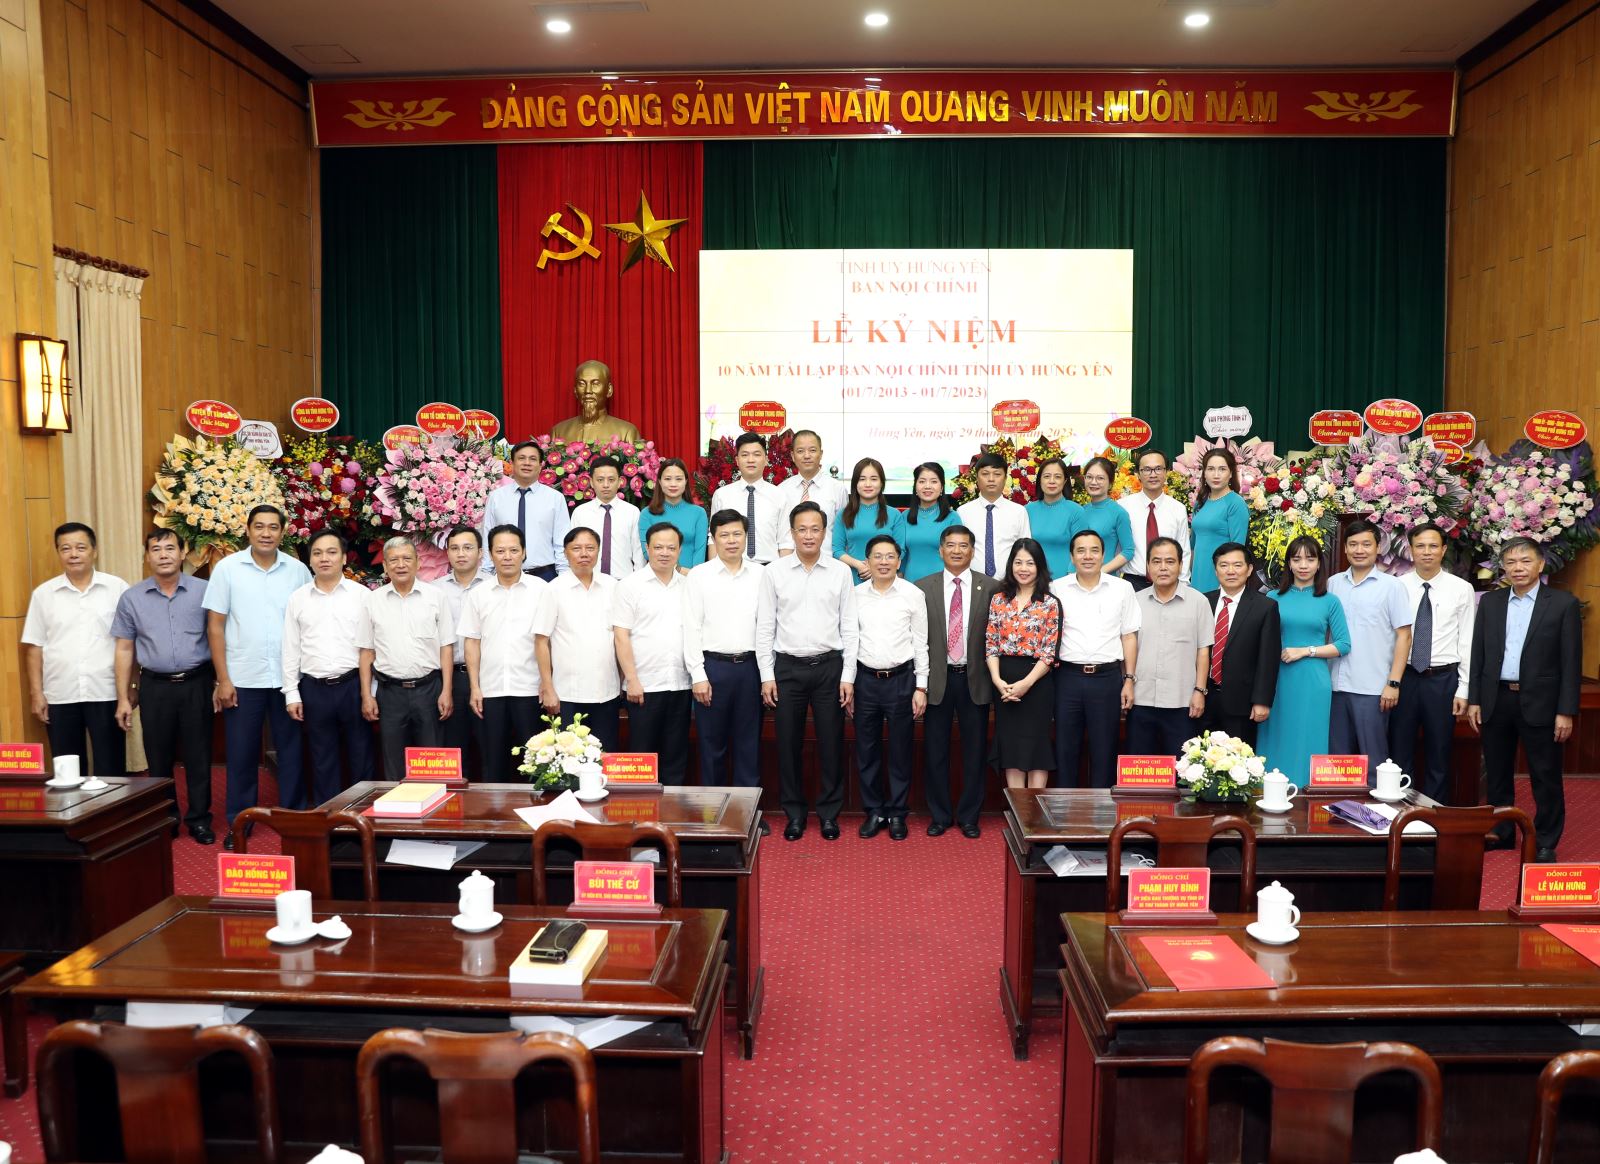 Lễ kỷ niệm 10 năm ngày tái lập Ban Nội chính Tỉnh ủy Hưng Yên 